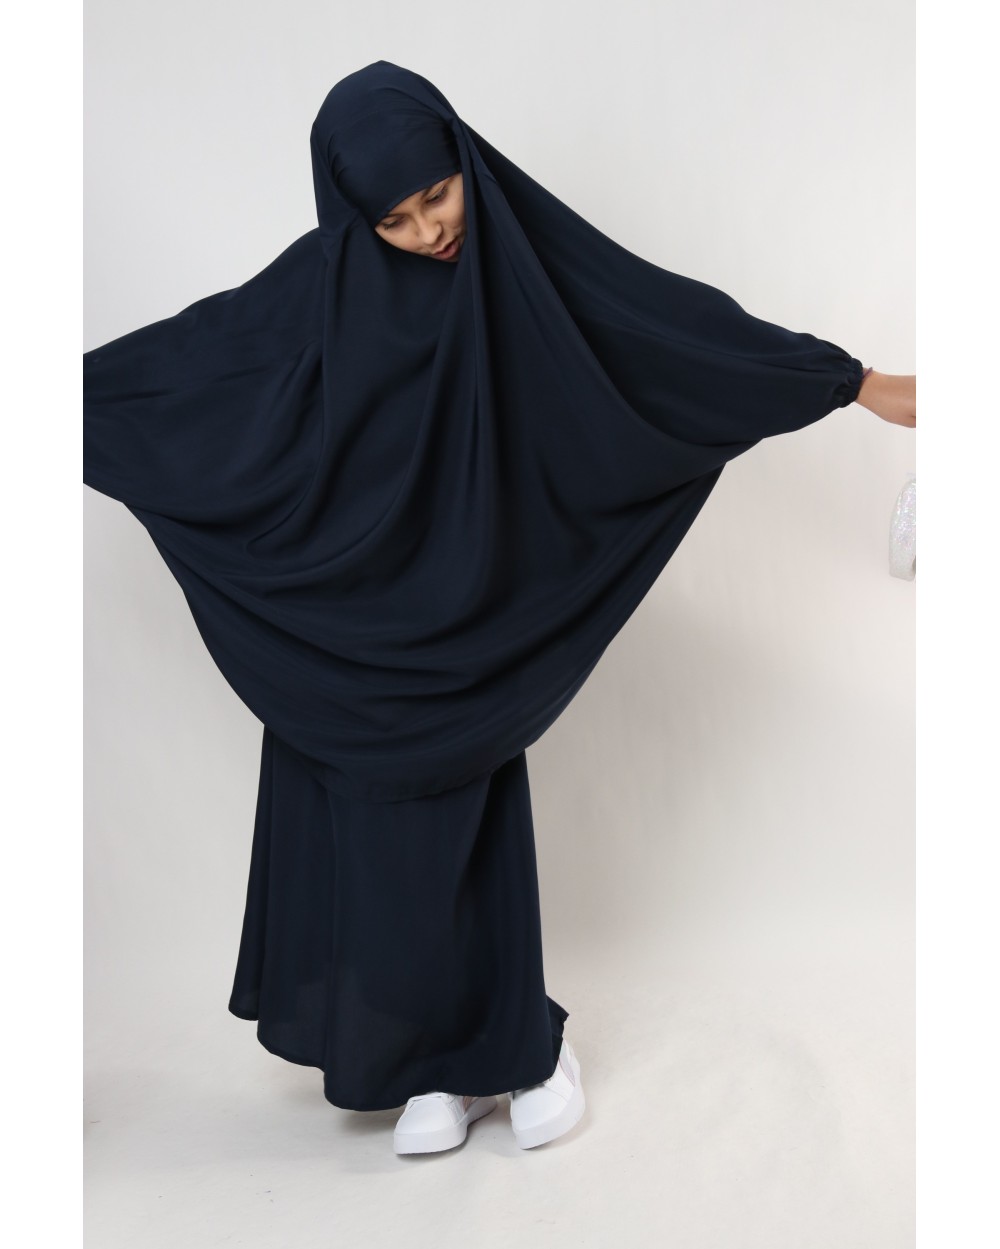 Jilbab Jihane with skirt